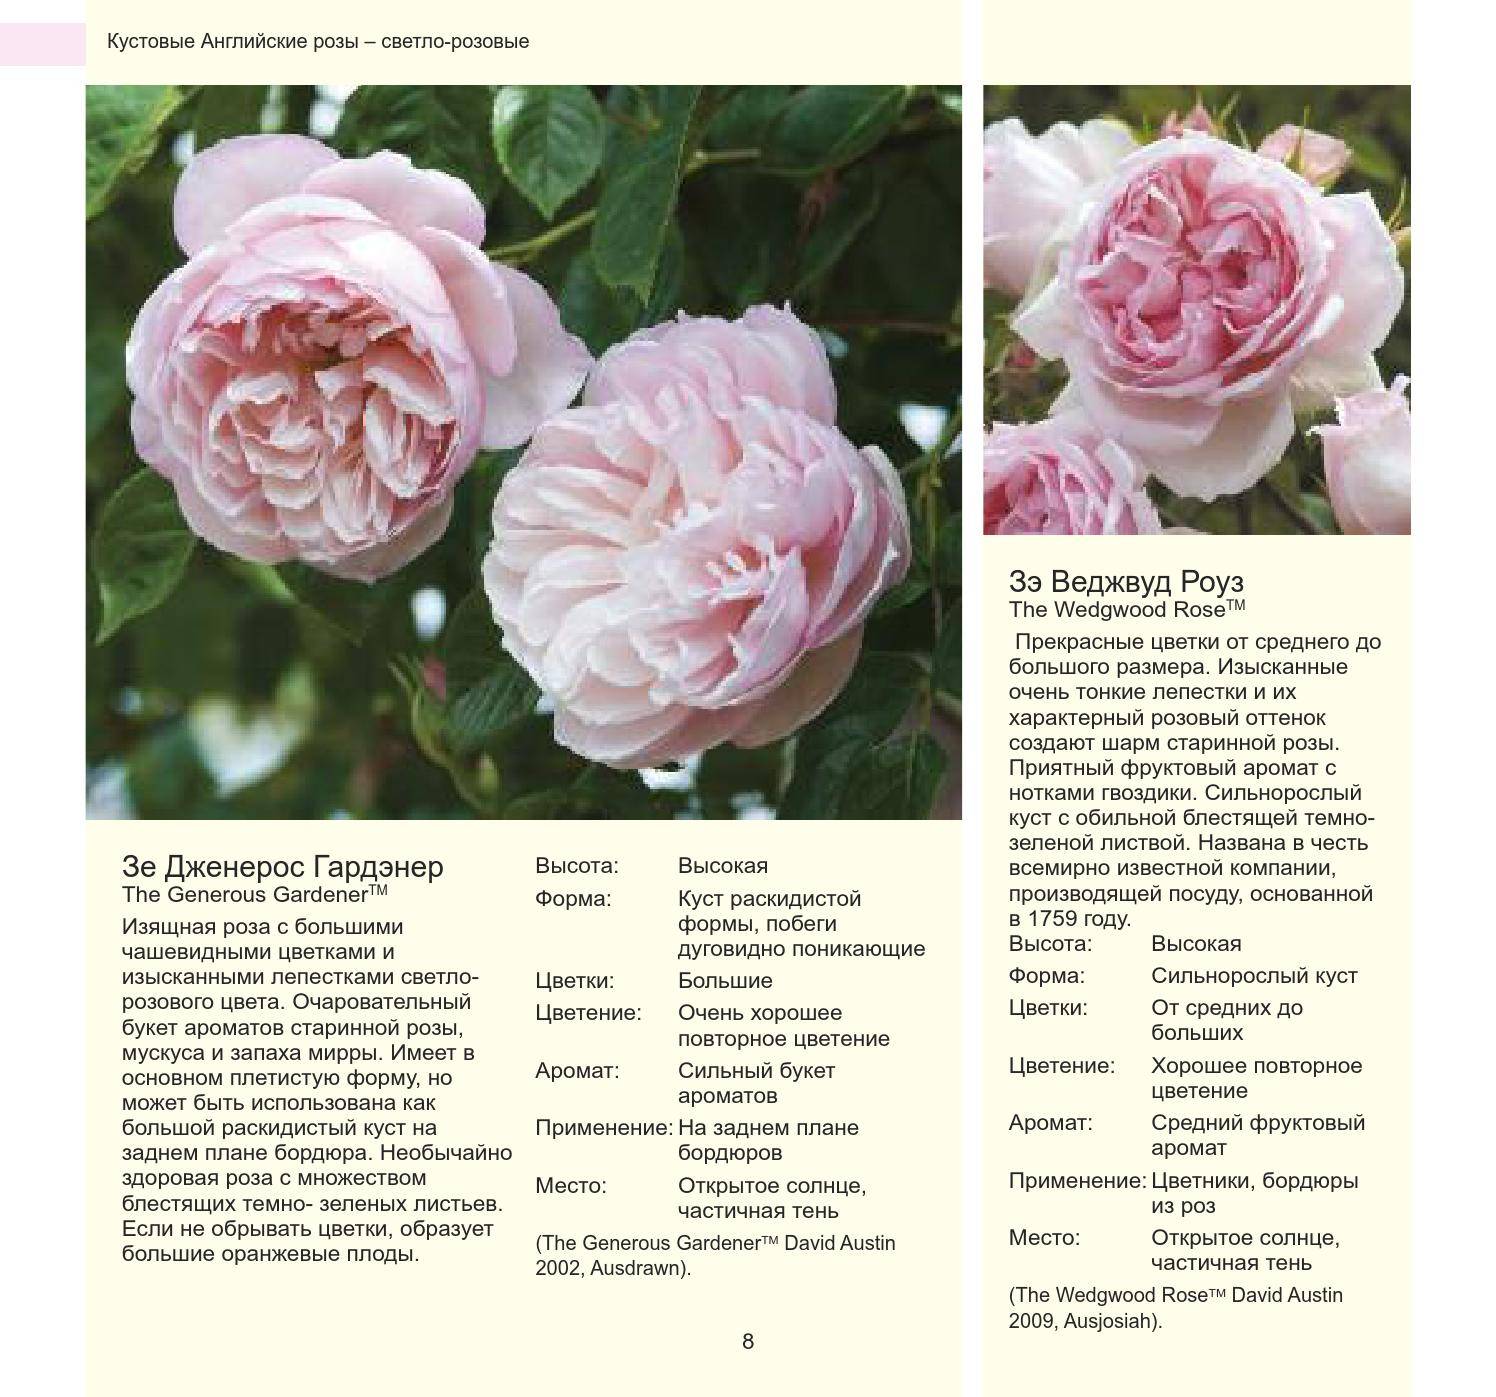 Малина херитейдж (heritage): отзывы садоводов, характеристики. обзор сорта малины херитейдж, советы по выращиванию